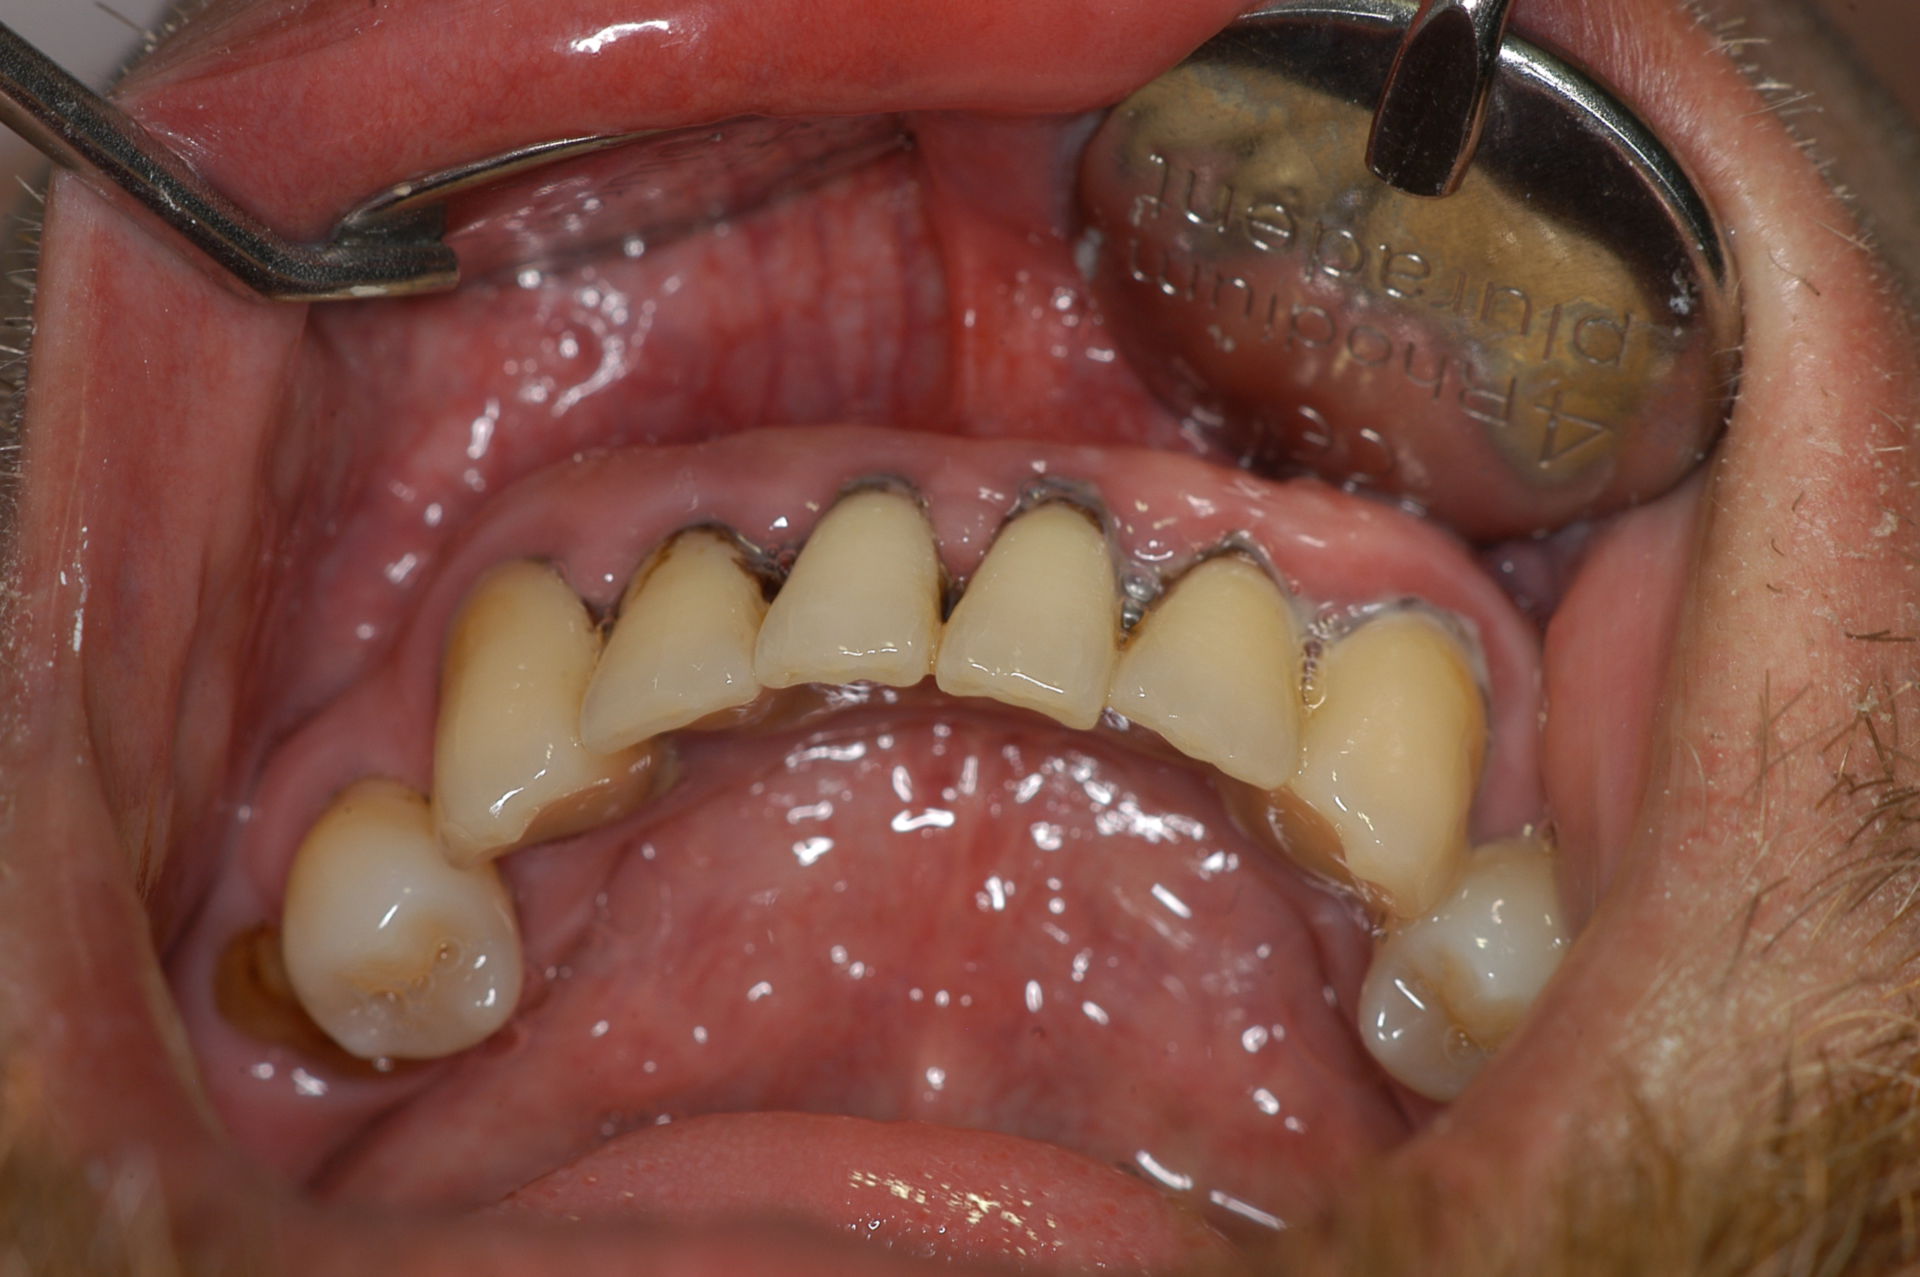 Parodontitis